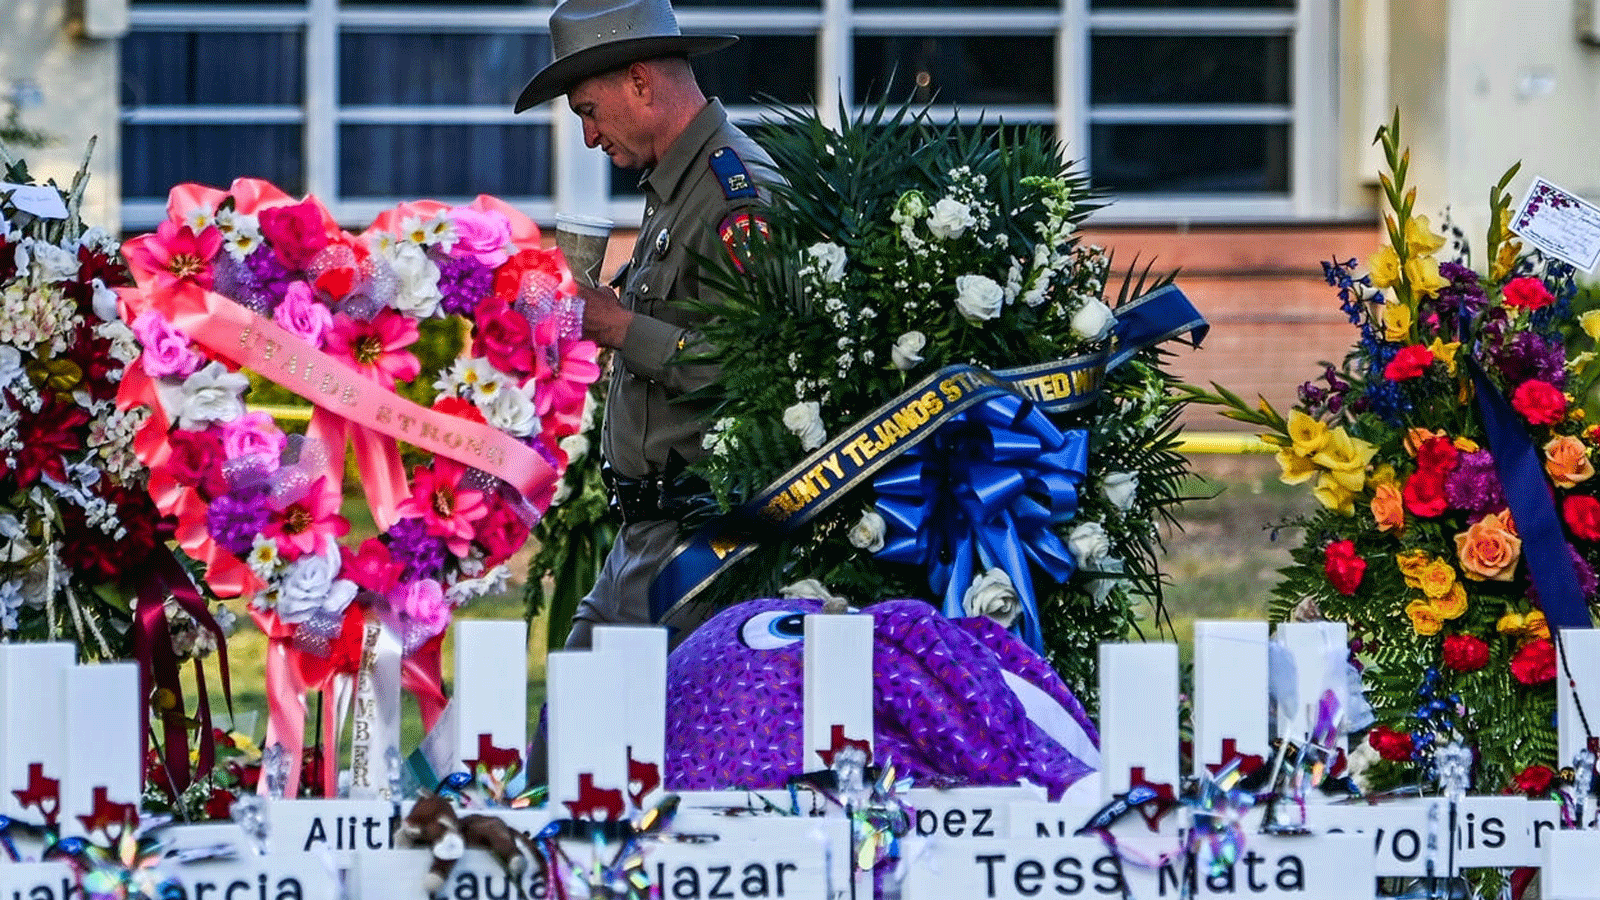 ضابط شرطة يقف بالقرب من النصب التذكاري المؤقت لضحايا إطلاق النار خارج مدرسة روب الابتدائية في أوفالدي، تكساس. 28 ايار\مايو 2022